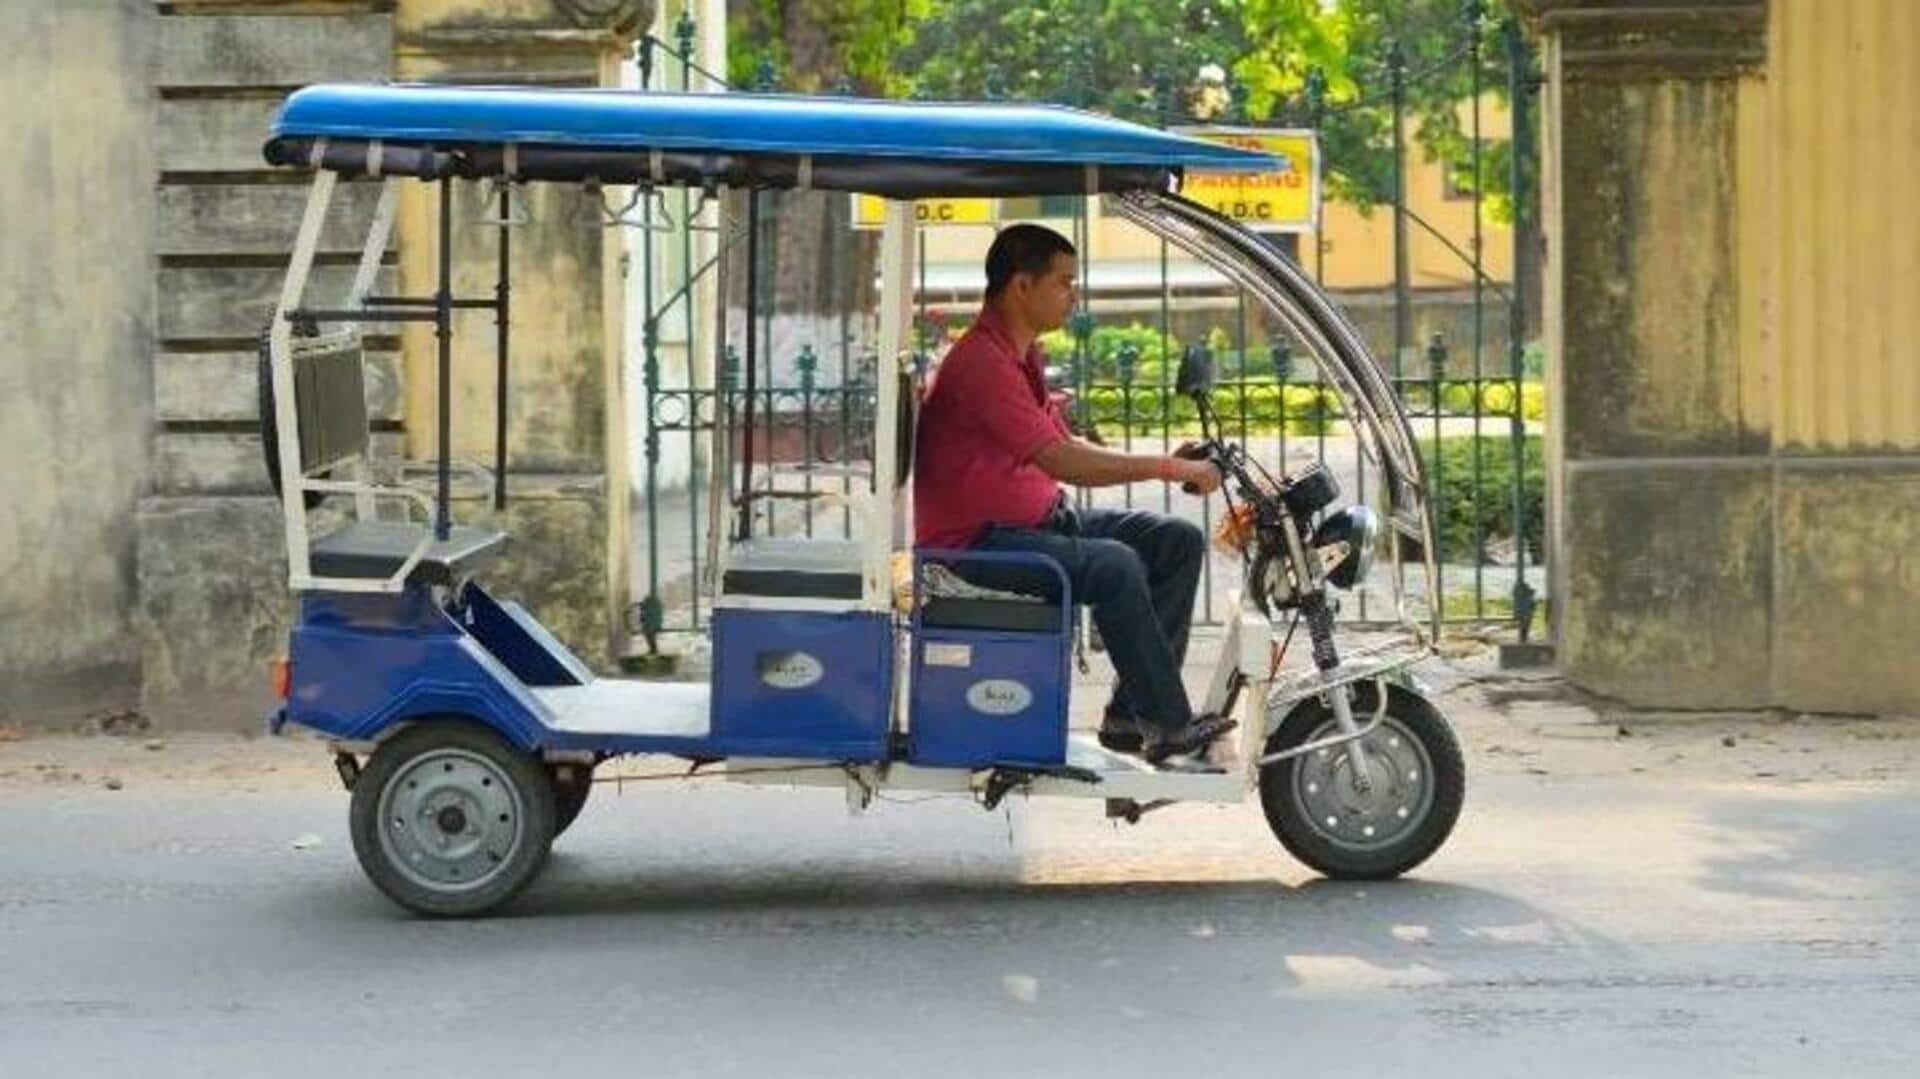 पश्चिम बंगाल: सिलीगुड़ी में ई-रिक्शा चालकों की घोषणा, बोर्ड परीक्षार्थियों को देंगे मुफ्त सेवा